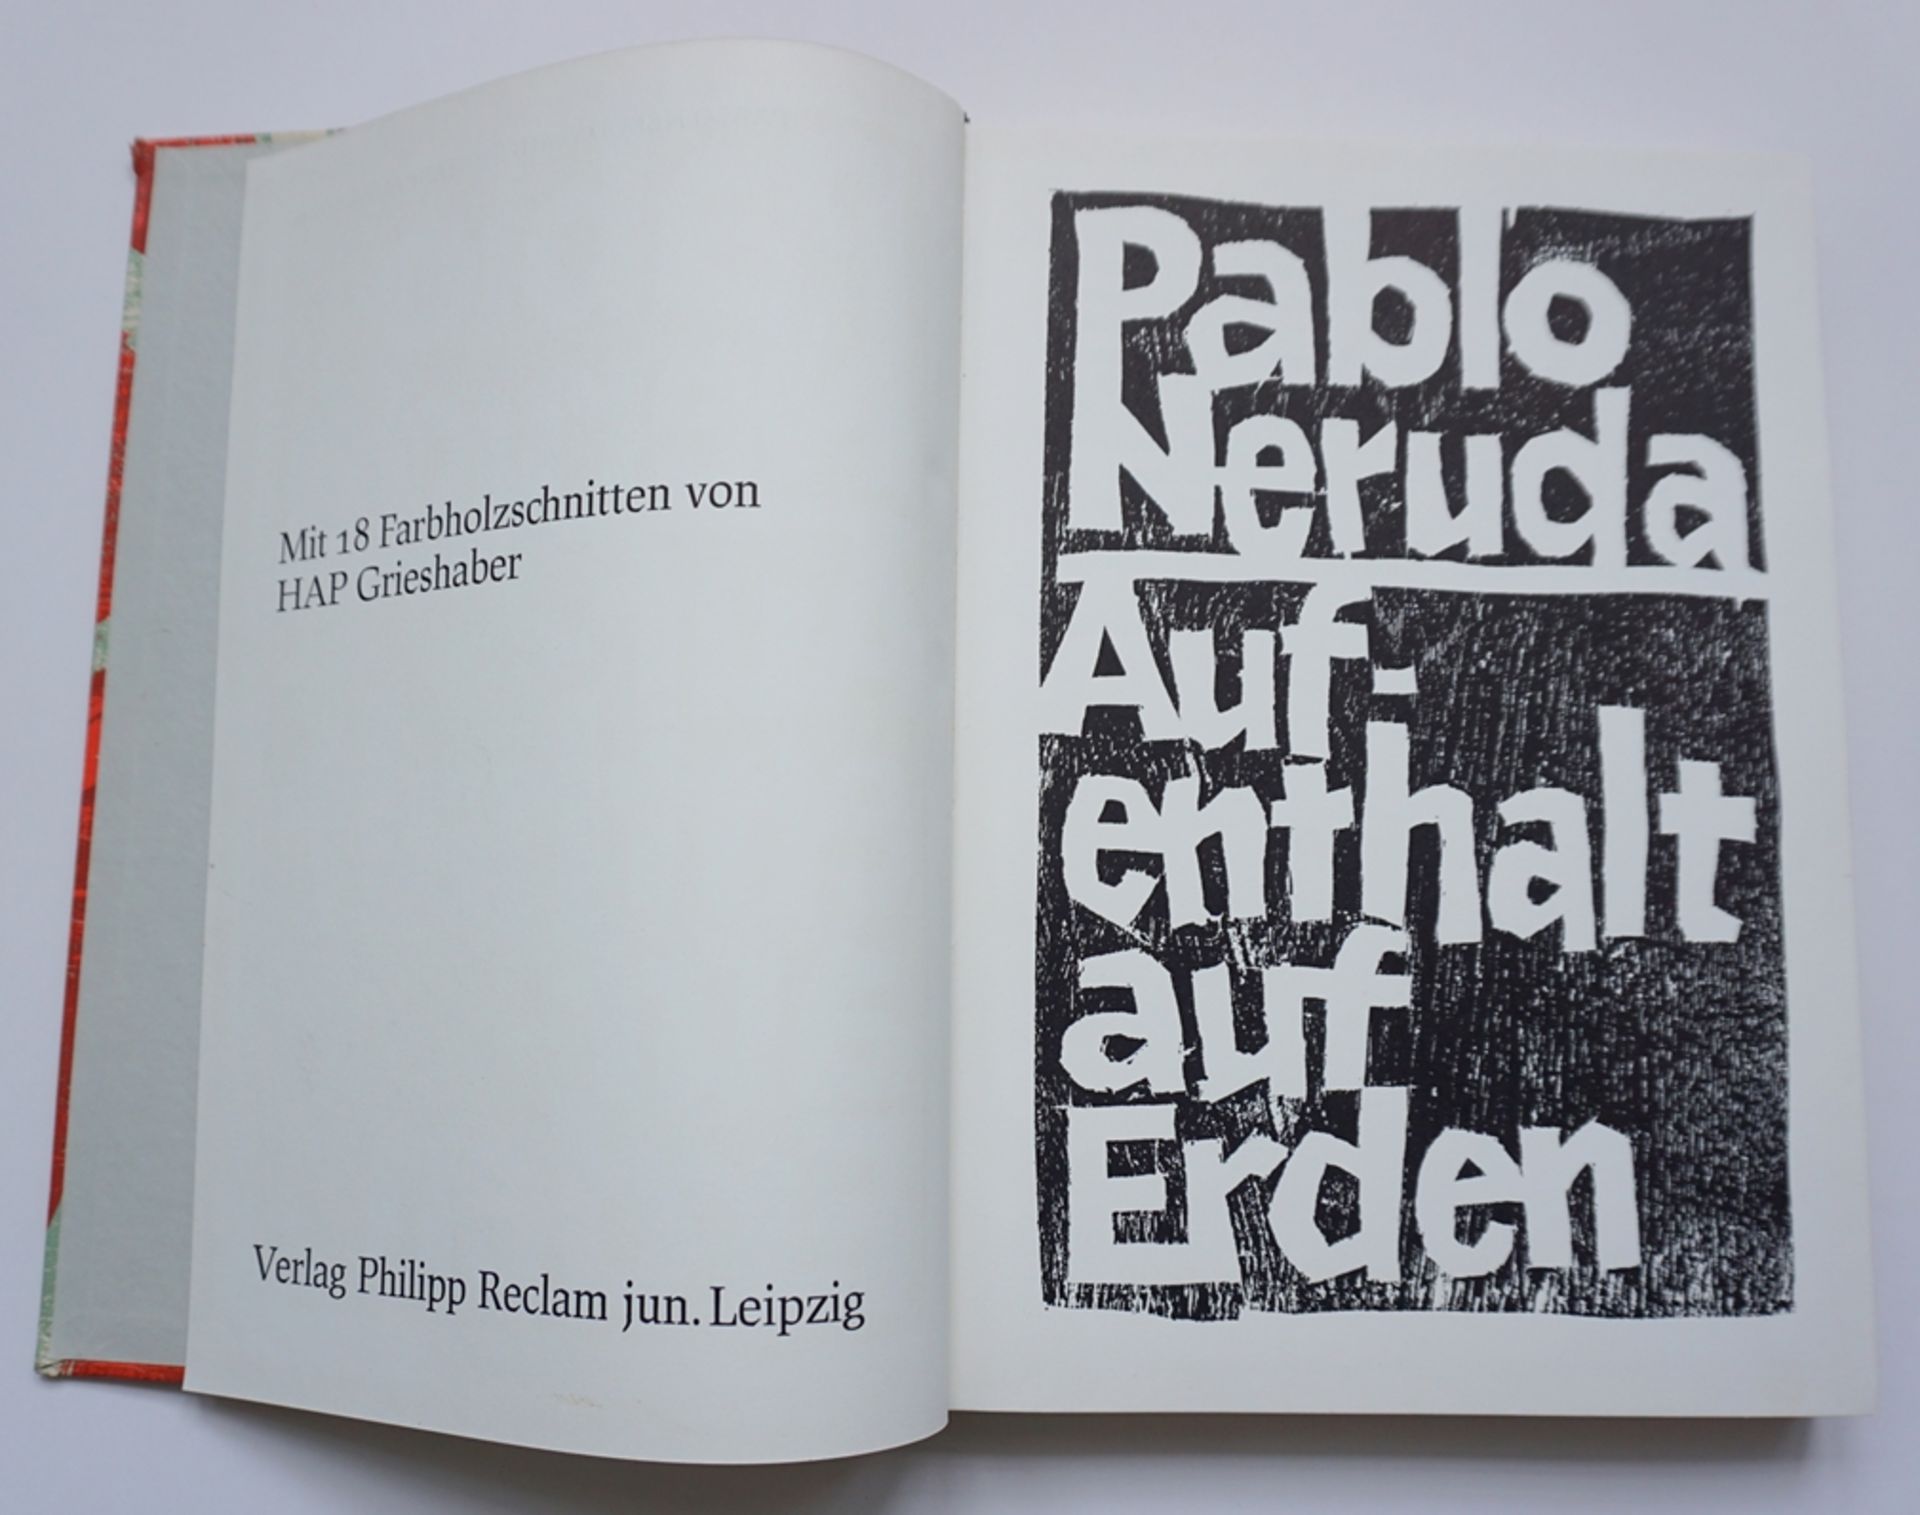 Pablo Neruda, "Aufenthalt auf Erden", mit 18 Original-Farbholzschnitten von HAP Grieshaber, 1973 - Bild 4 aus 6